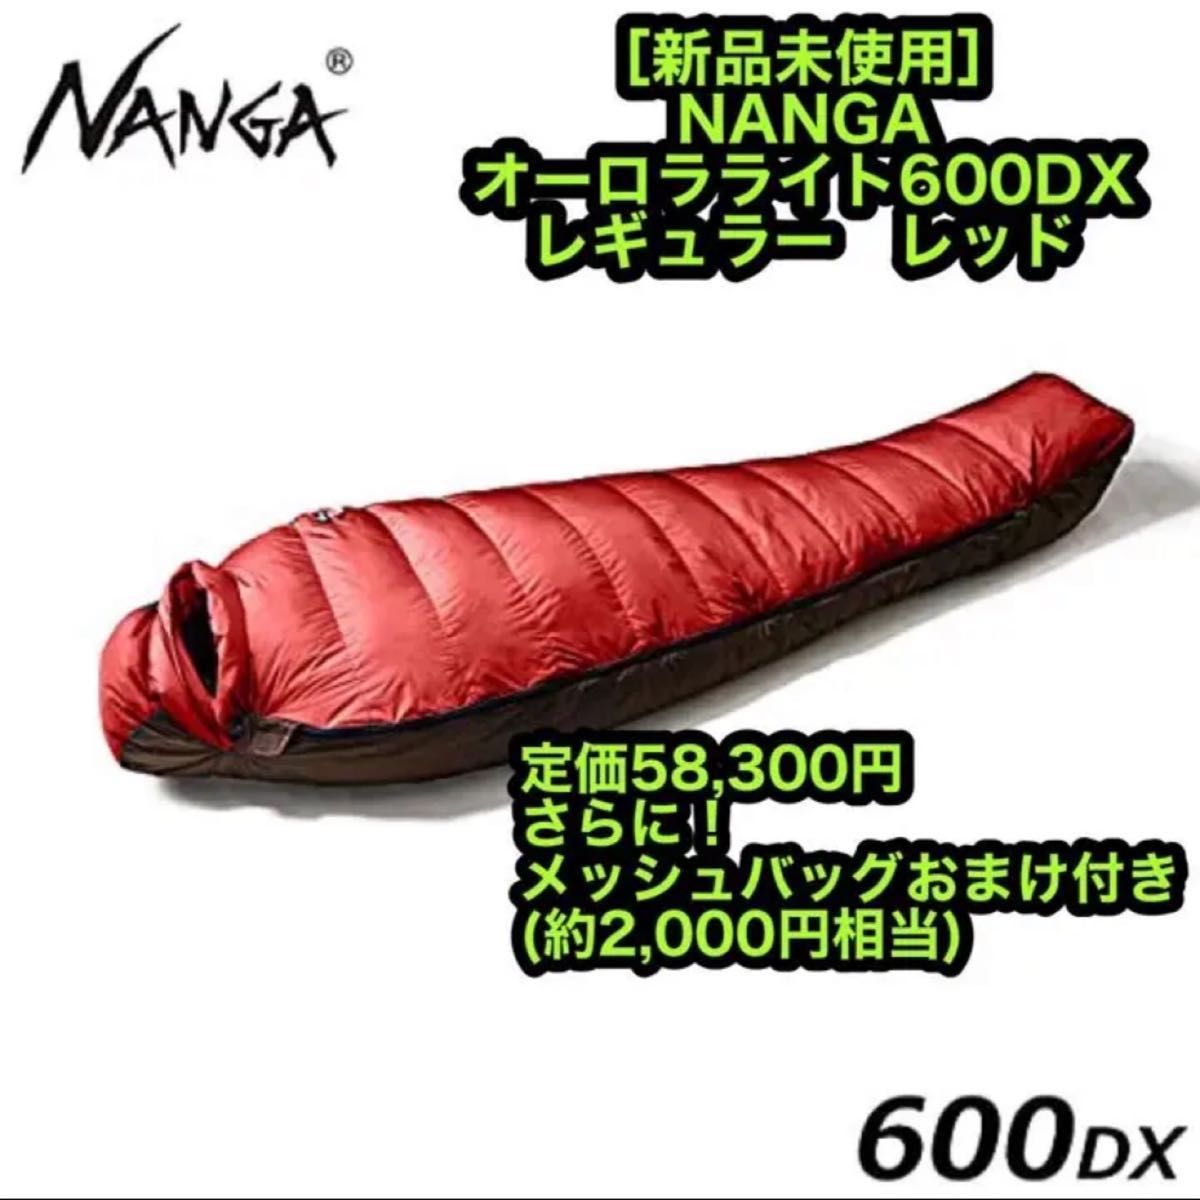 新品 NANGA ナンガ オーロラライト600DX レギュラー レッド シュラフ